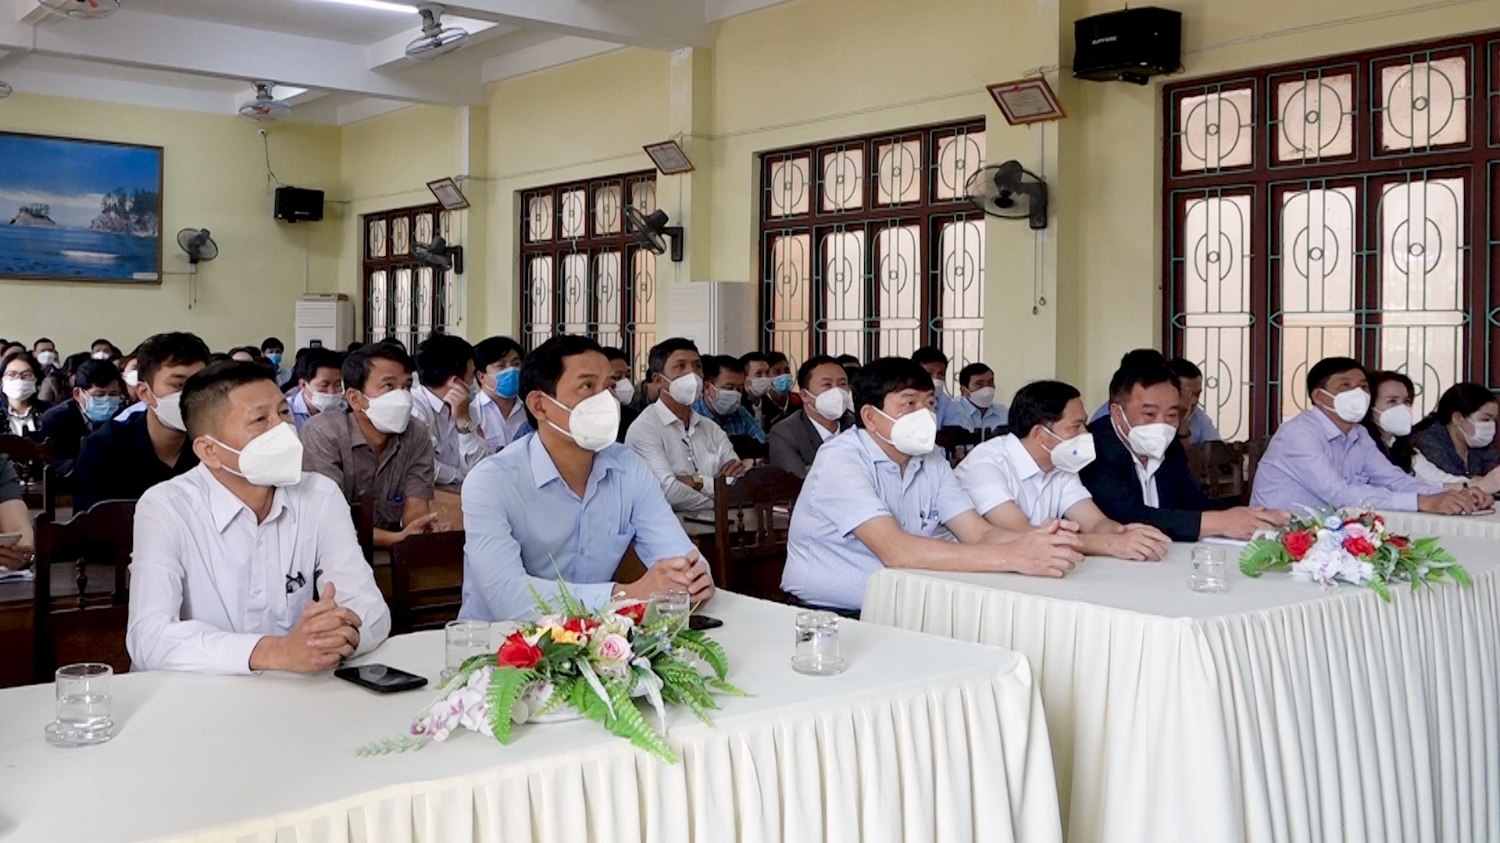 Đảng bộ Cơ quan Chính quyền thị xã tham gia học tập, quán triệt chuyên đề năm 2022 về học tập làm theo tư tưởng, đạo đức, phong cách Hồ Chí Minh